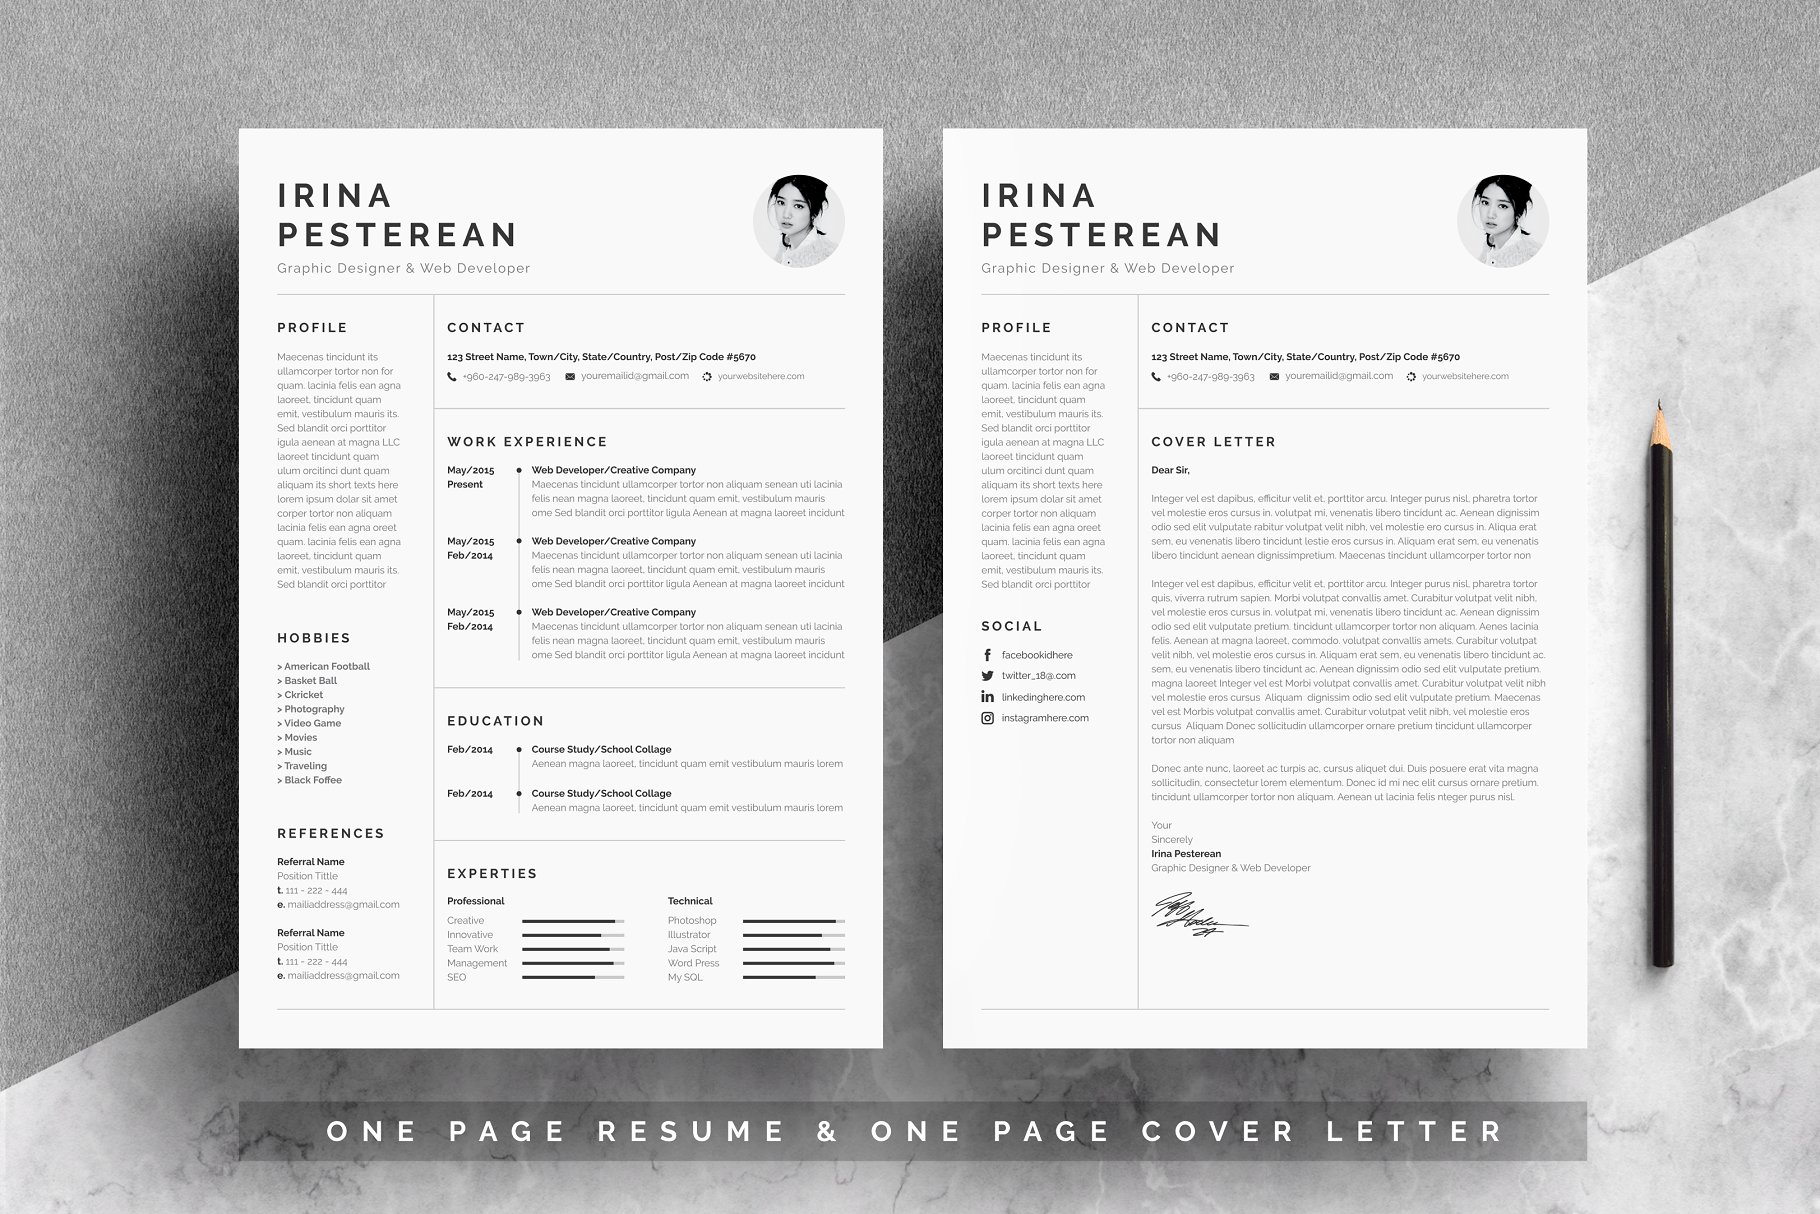 简约黑白风格个人简历设计模板 Resume|Cv_Irina Pesterean插图(1)